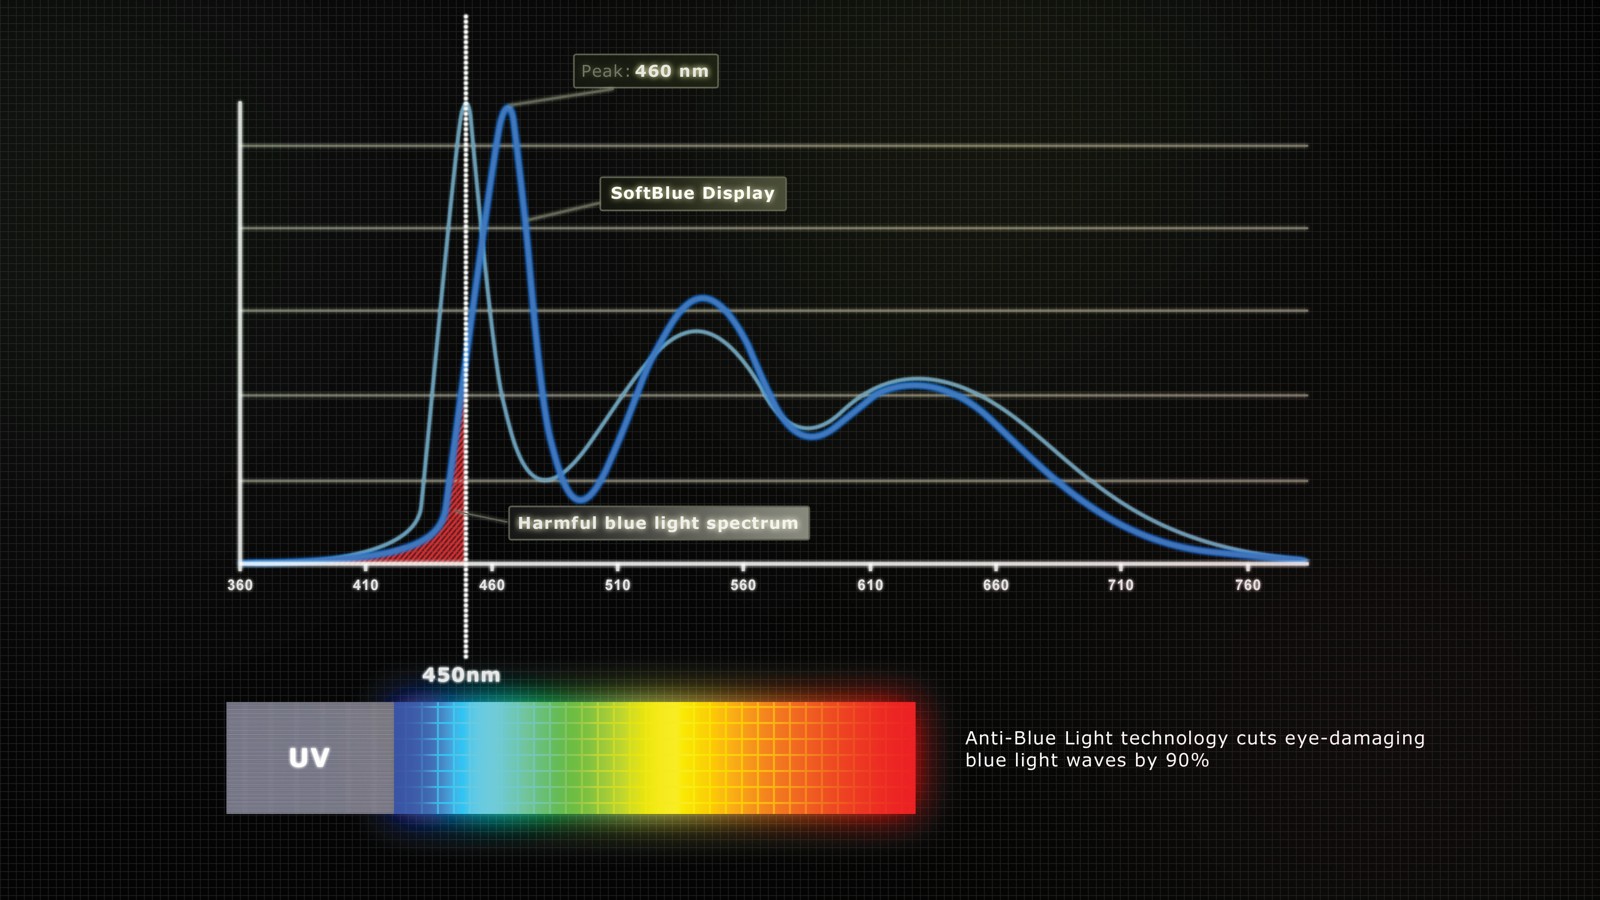 Monitore: Blaues Licht - Das schädliche Spektrum liegt vor allem zwischen 410 und 450 nm. Monitore mit reduziertem Blaulichtspektrum vermeiden es weitgehend. Grafik: AOC